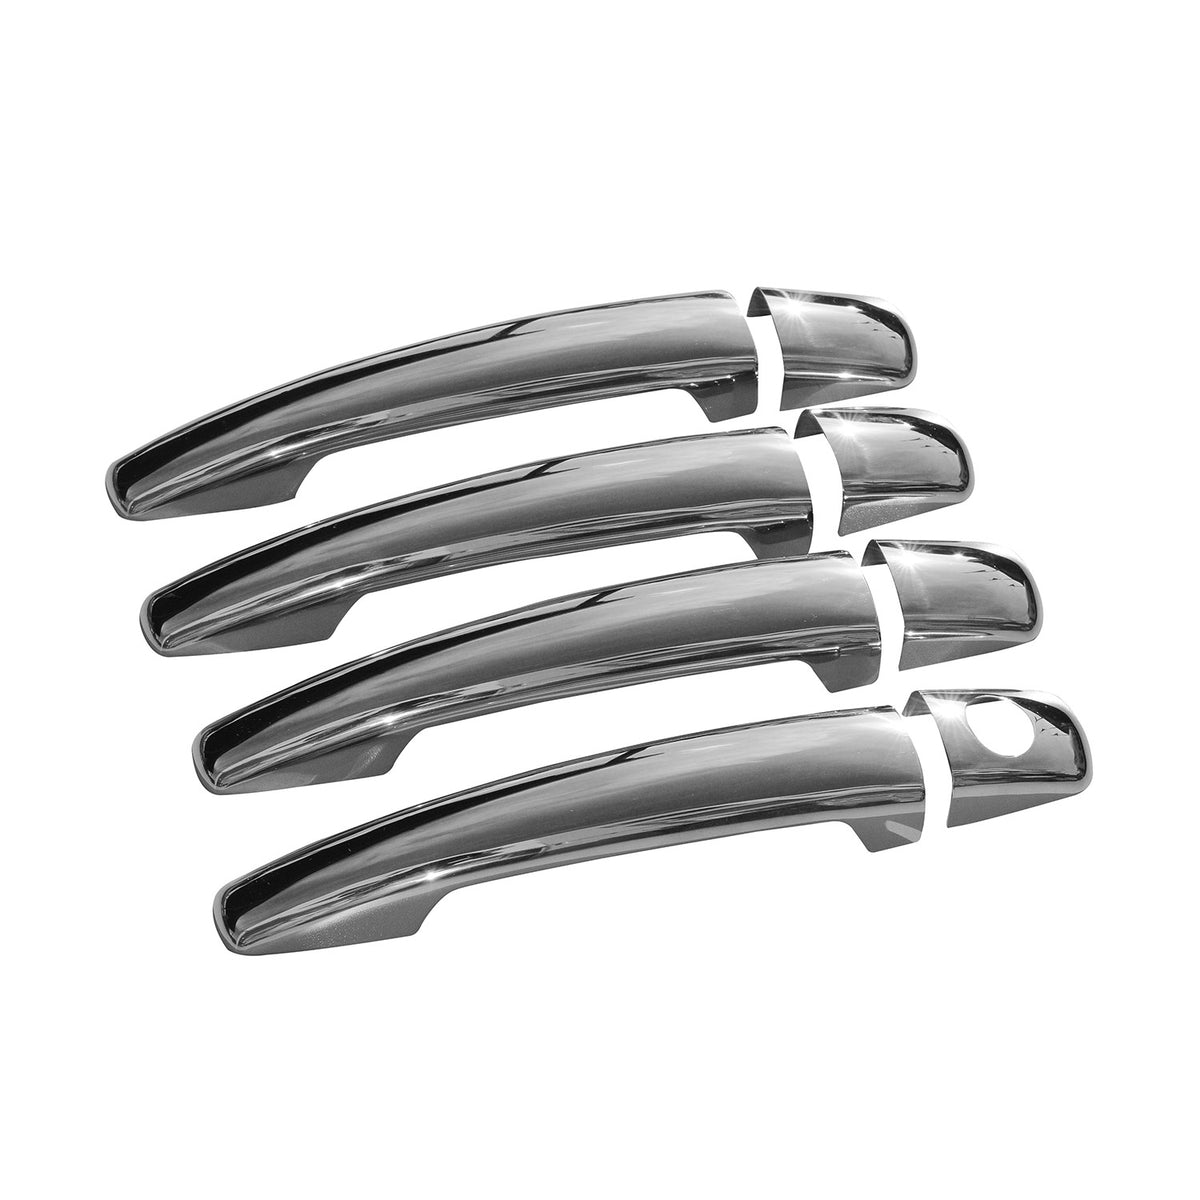 Door handle cover door handle caps for Fiat Scudo 2007-2016 stainless steel silver 8 pieces